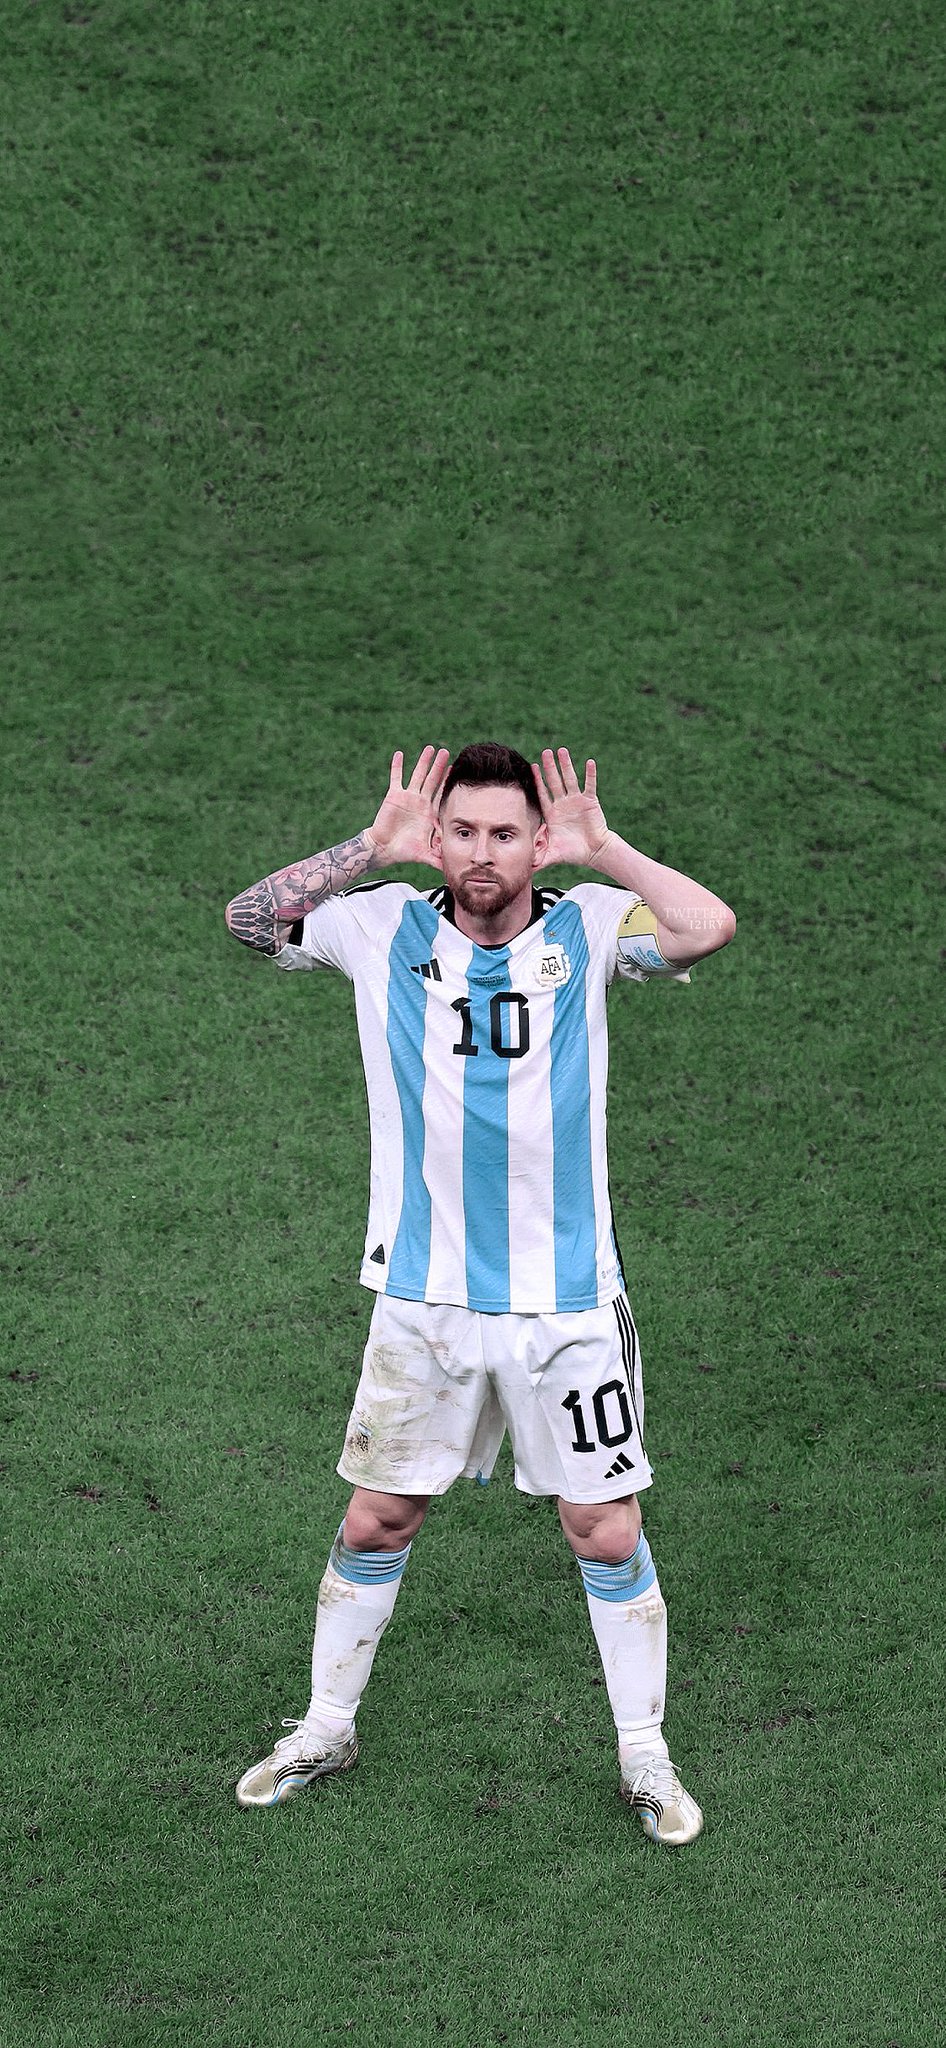 World Cup là sự kiện bóng đá vĩ đại nhất trên thế giới, và Messi là một trong những ngôi sao hàng đầu tham dự giải đấu này. Hãy xem những hình ảnh đẹp nhất của Messi tại World Cup, với độ phân giải 4K siêu nét, giúp bạn cảm nhận được sự hấp dẫn và phấn khích của trận đấu này. Đừng bỏ lỡ cơ hội thưởng thức những hình ảnh đẹp nhất của cầu thủ Argentina này trong sự kiện quan trọng nhất của bóng đá!